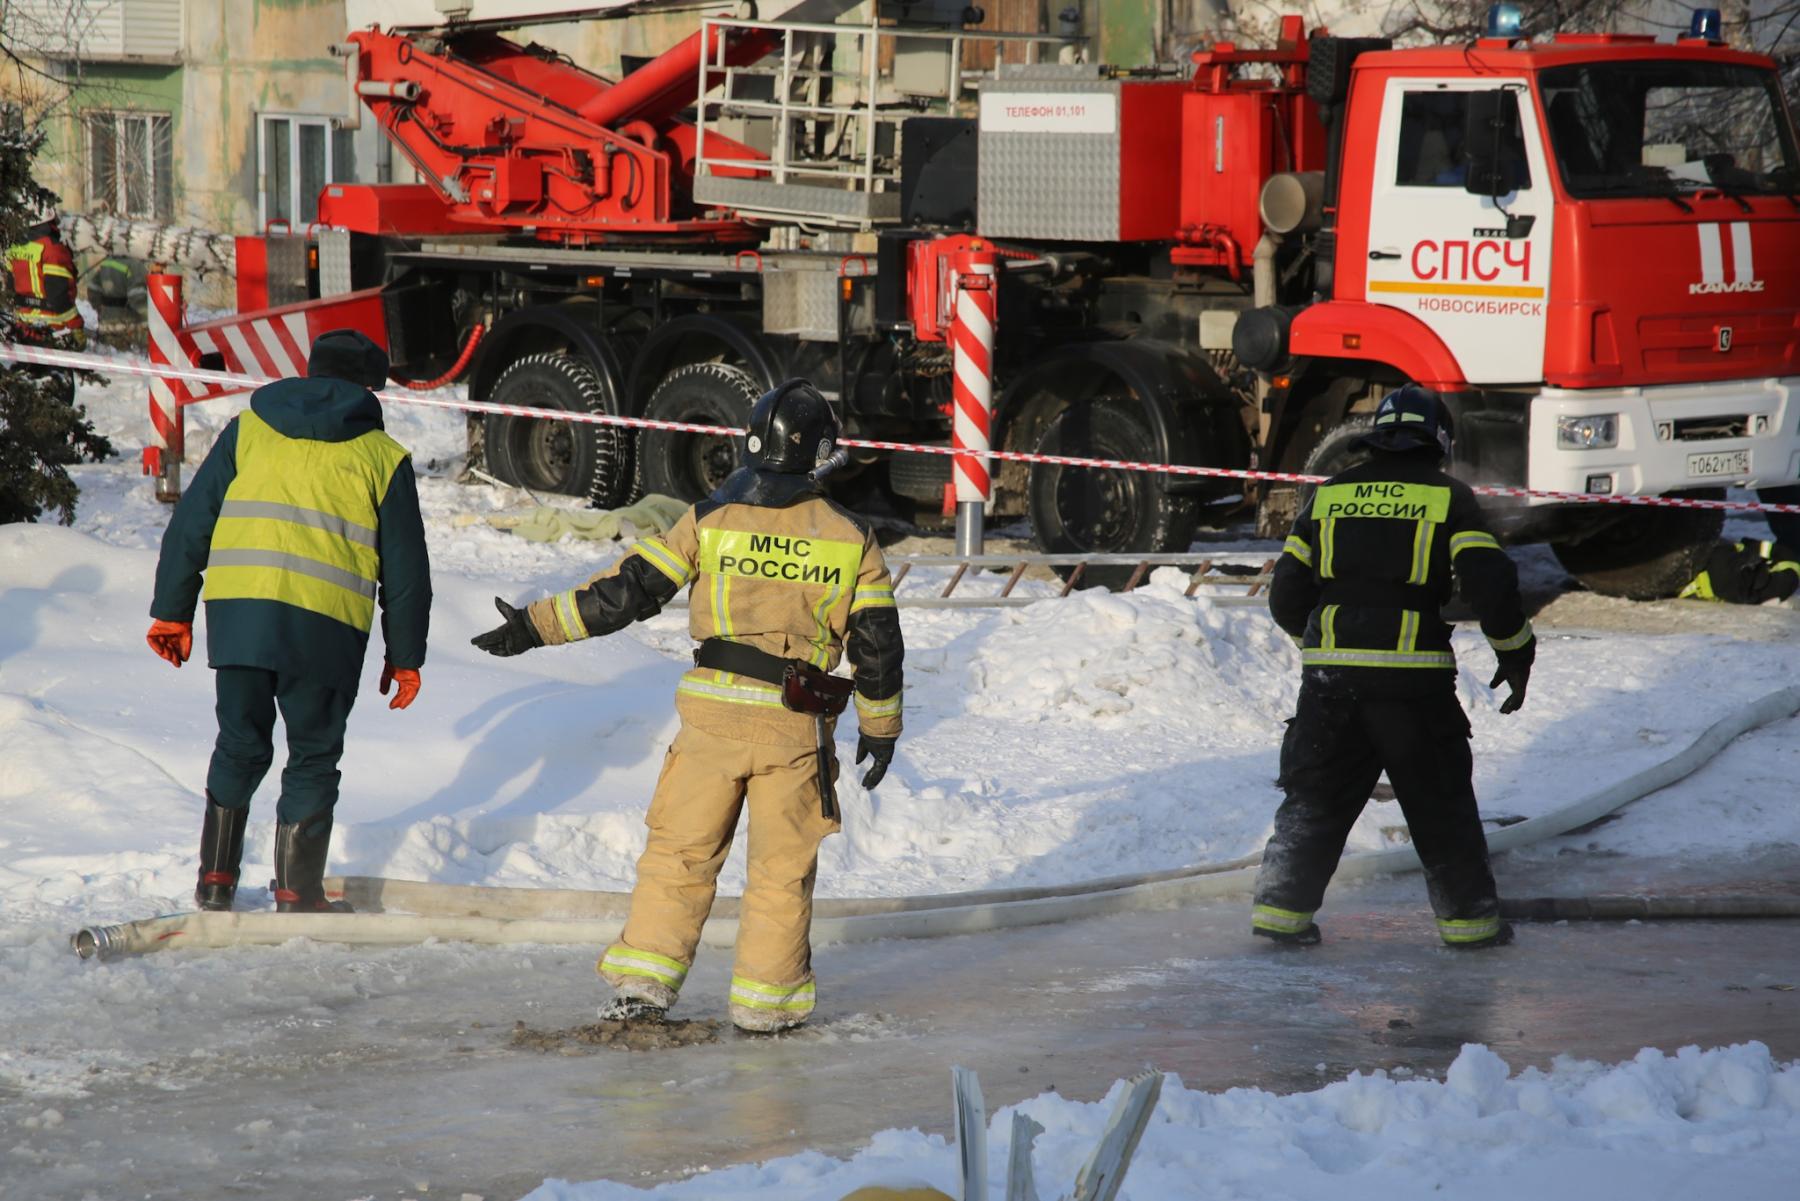 Фото Восстановлению не подлежит: в Новосибирске из-за взрыва газа обрушились подъезды пятиэтажки 18